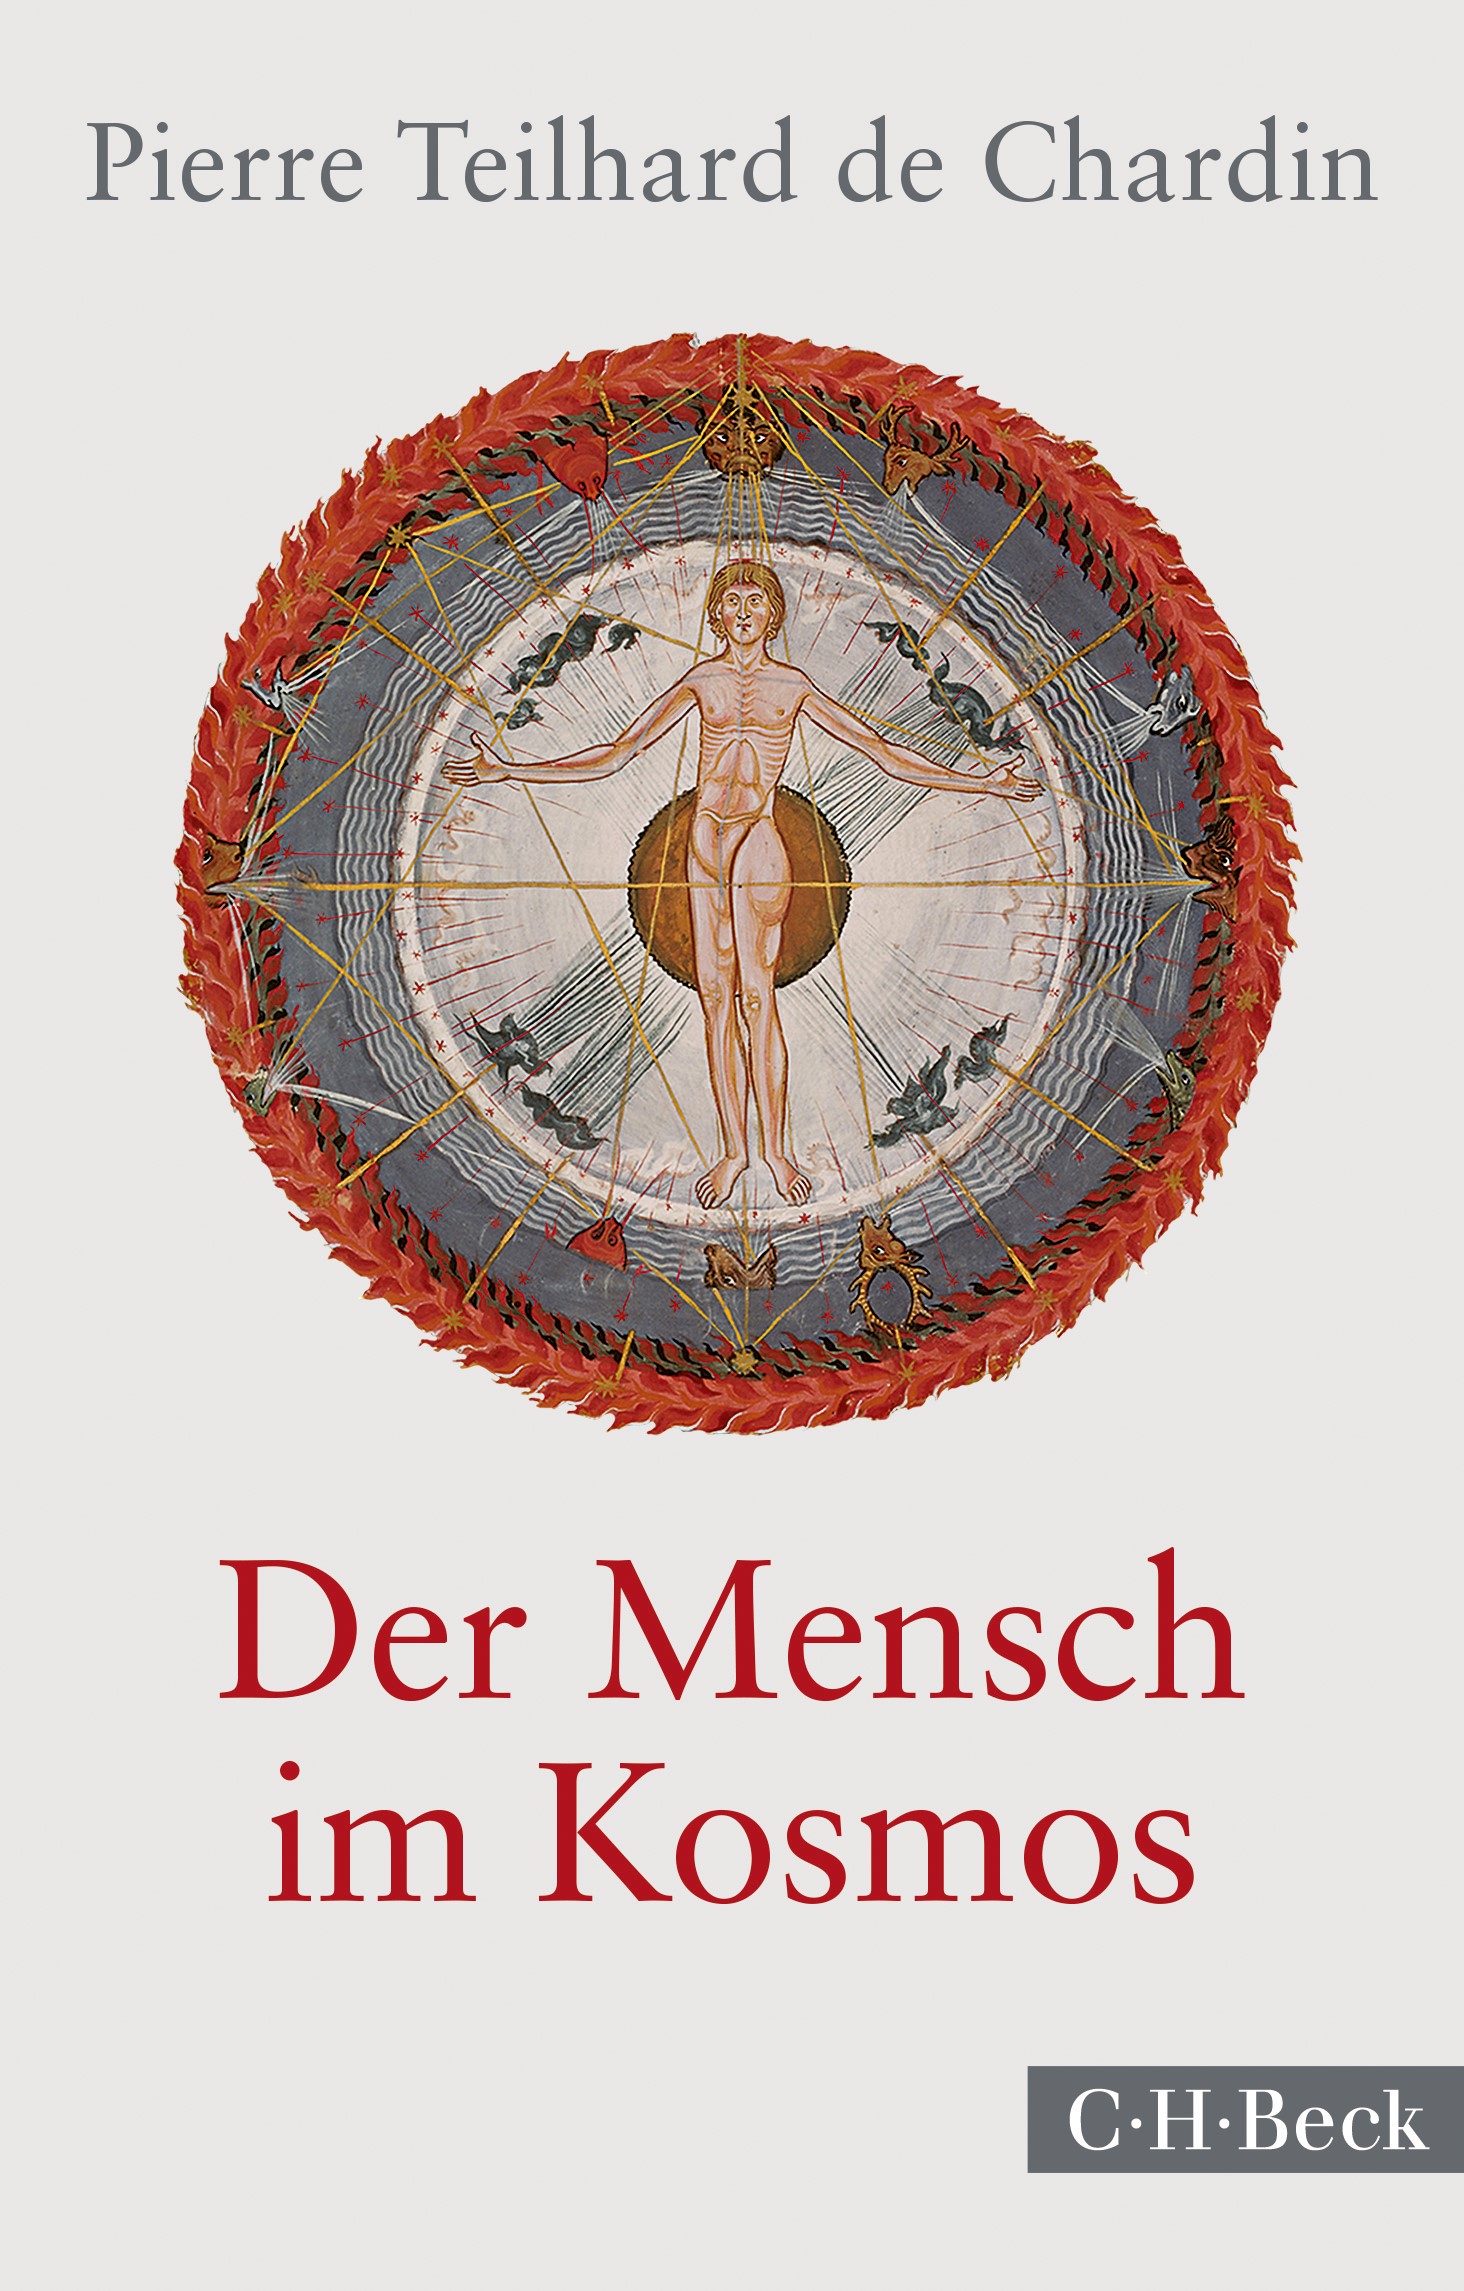 Cover: Teilhard de Chardin, Pierre, Der Mensch im Kosmos